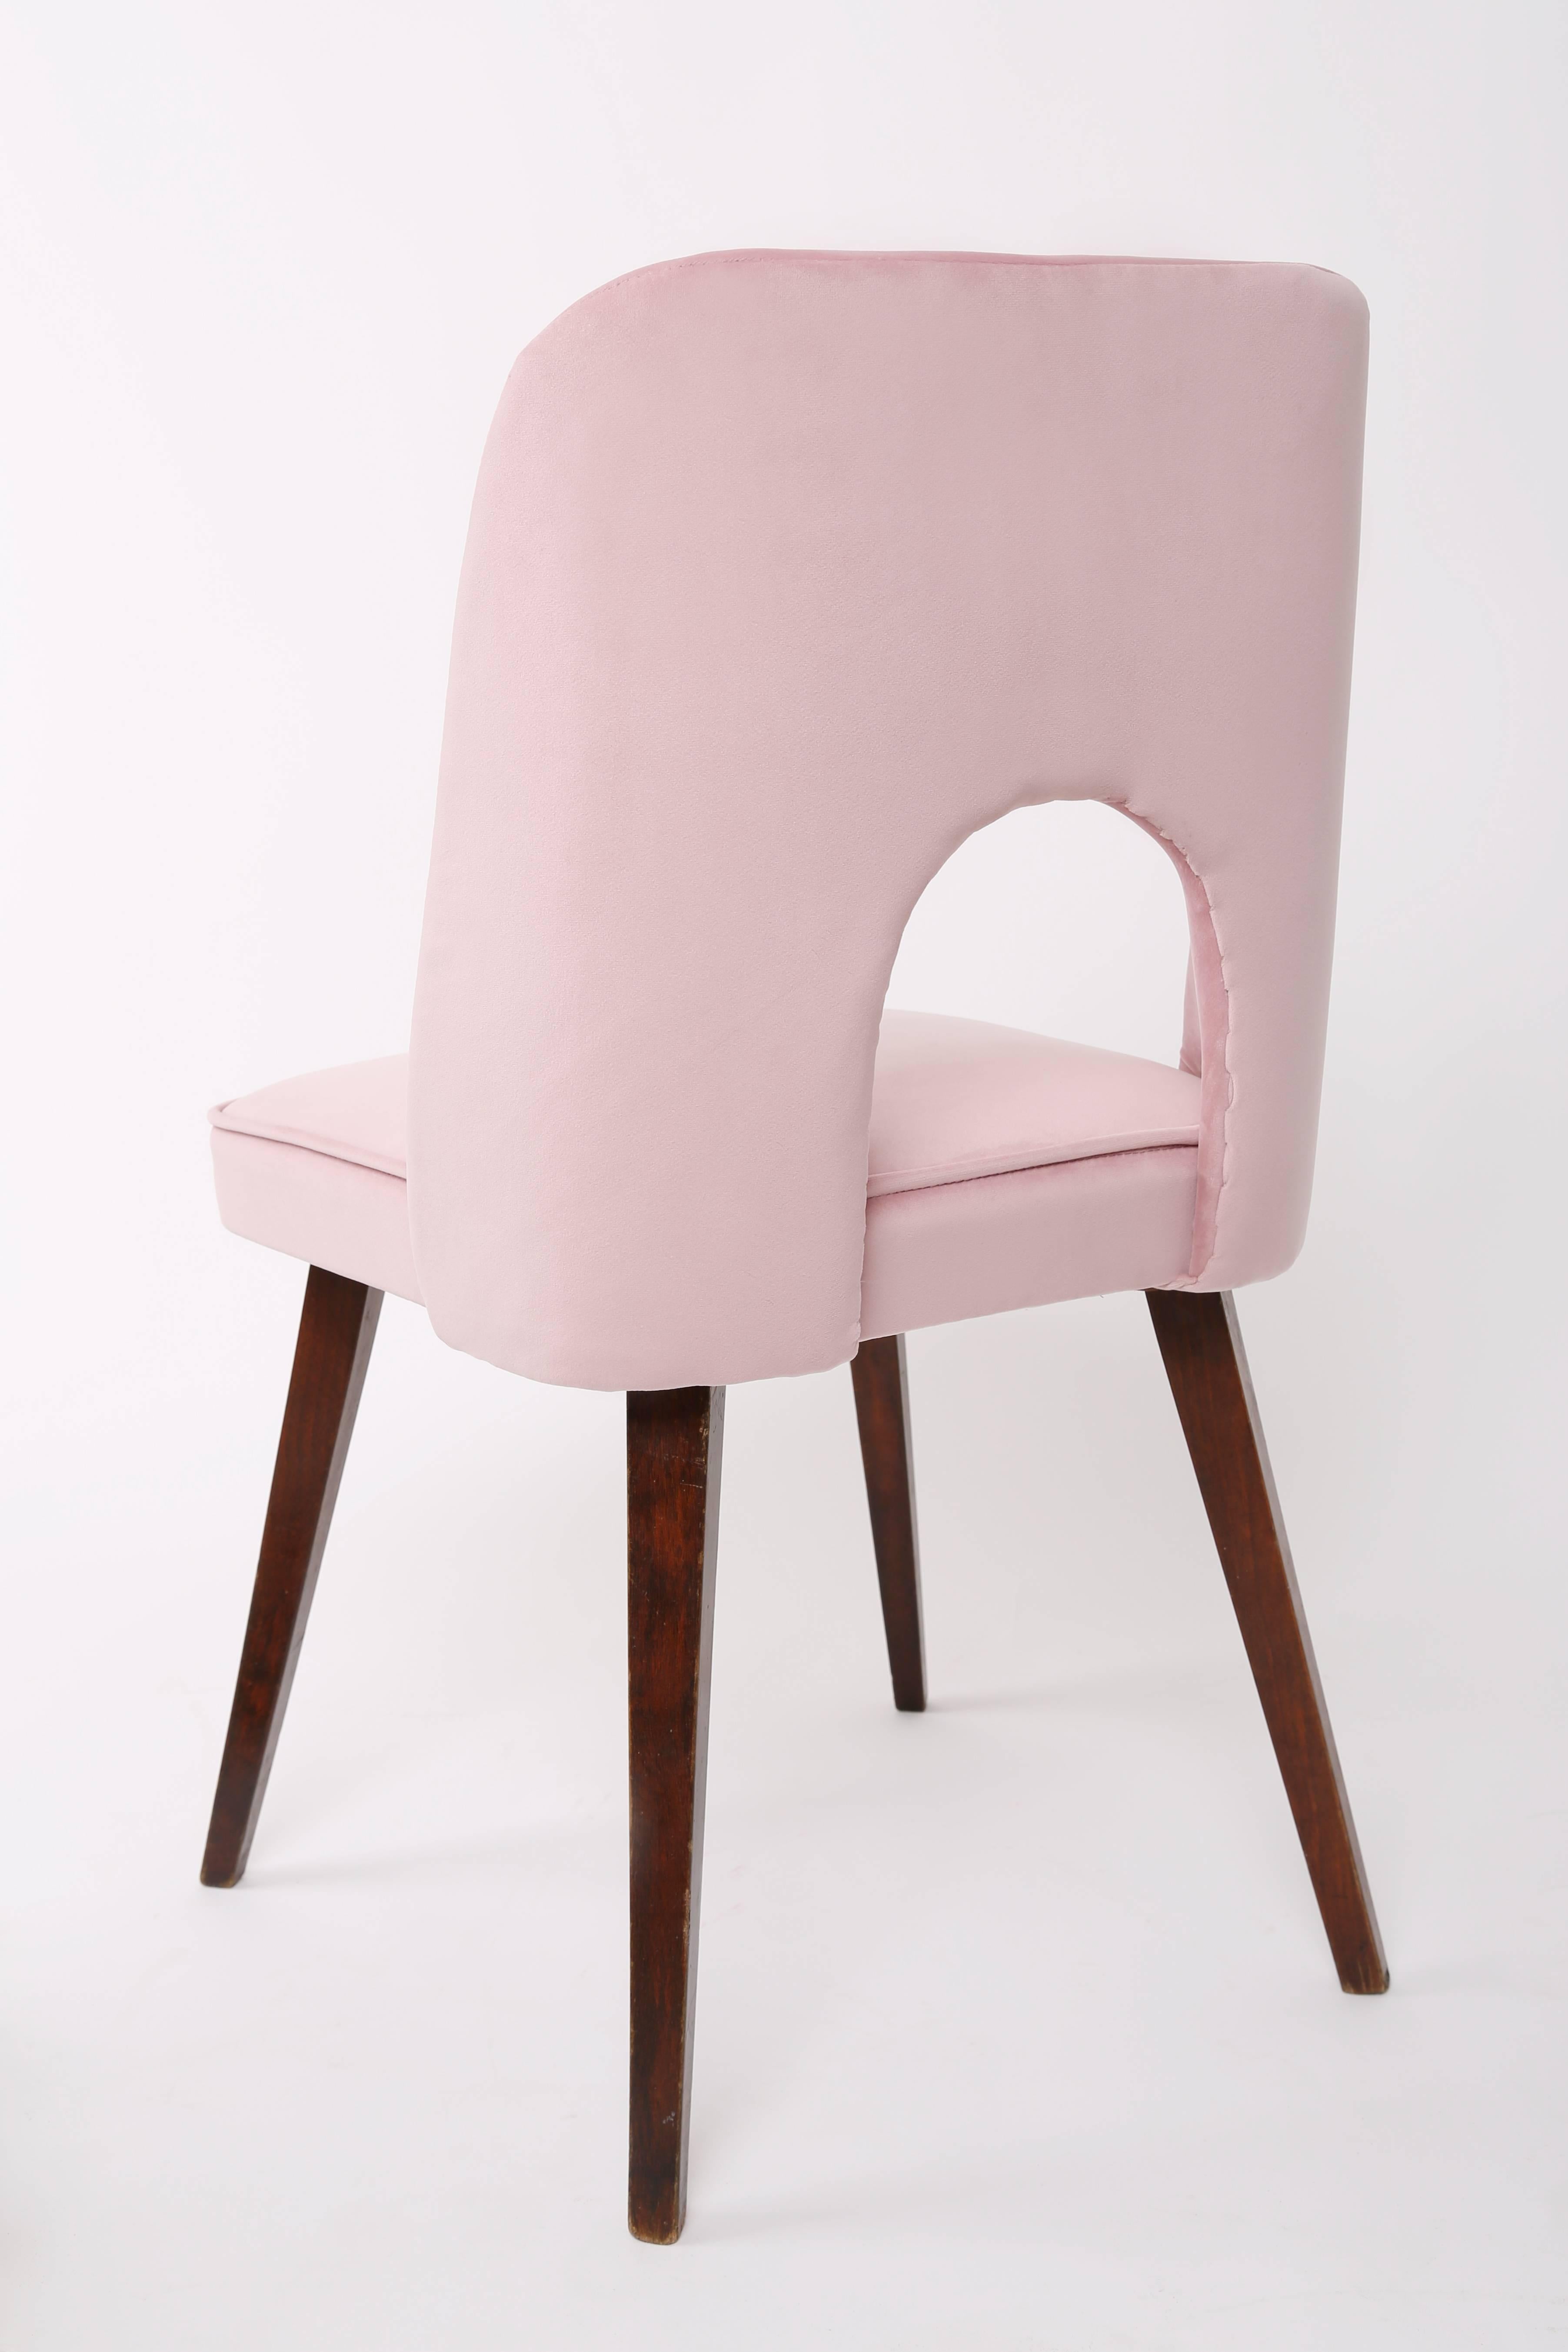 Fait main Ensemble de six chaises rose pâle « Shell », années 1960 en vente